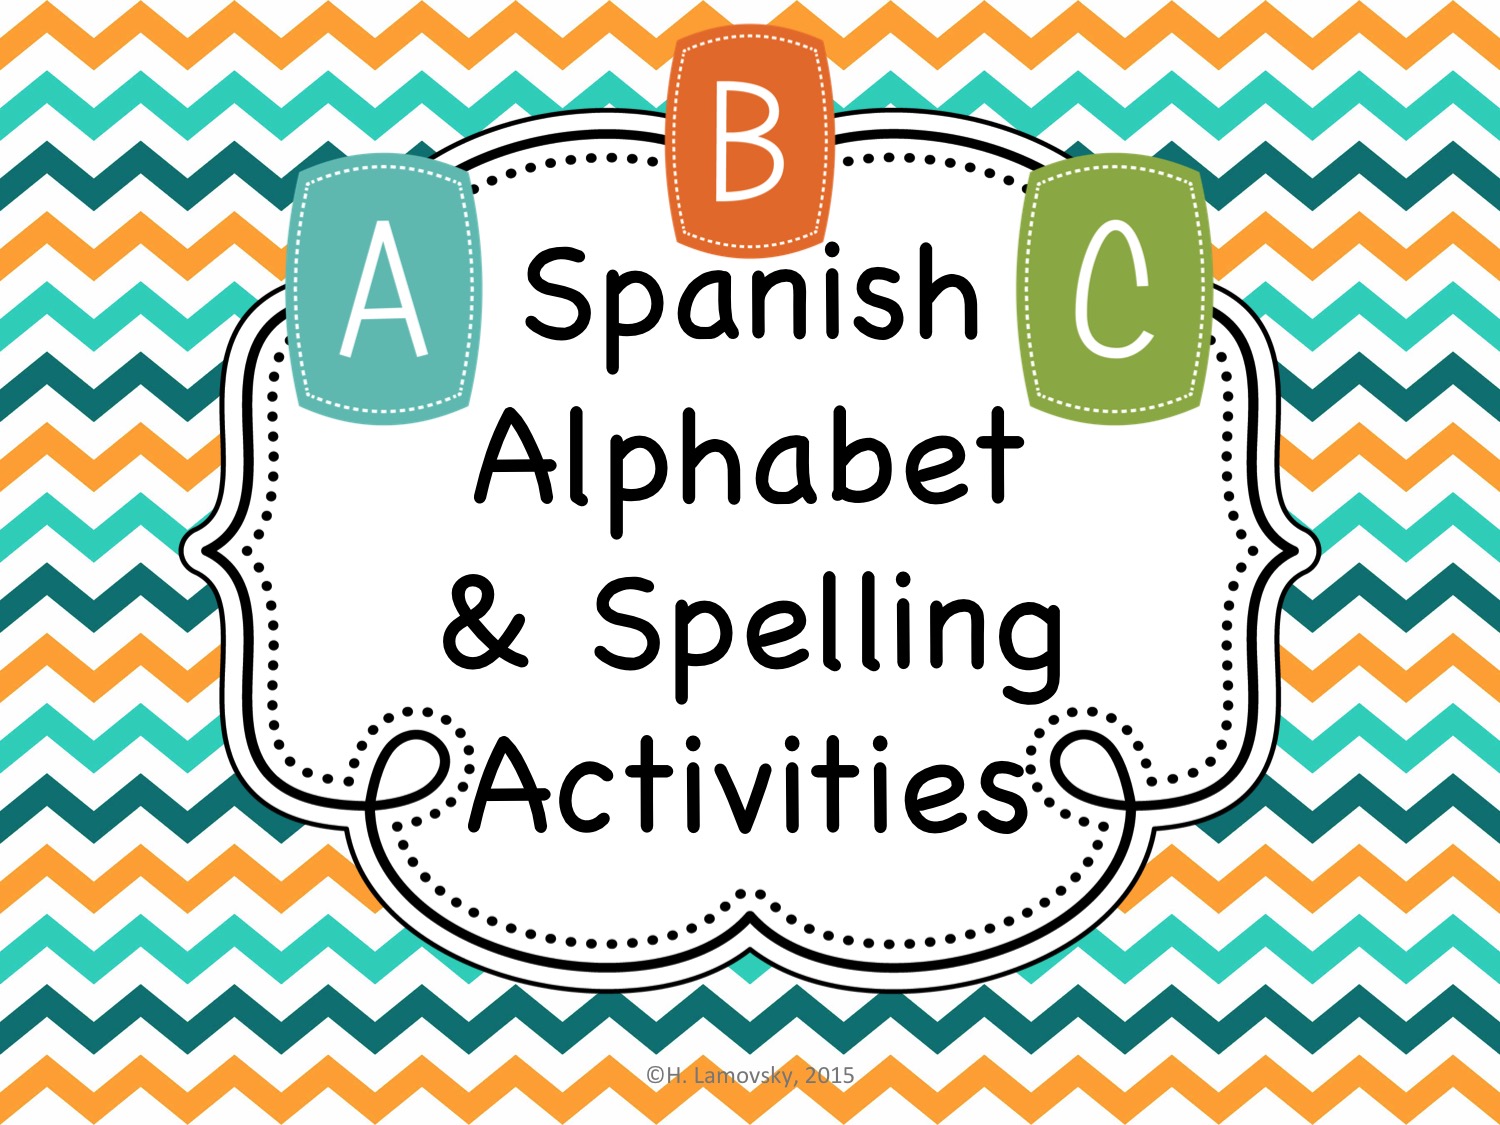 Spanish Alphabet & Spelling Activities (Abecedario)